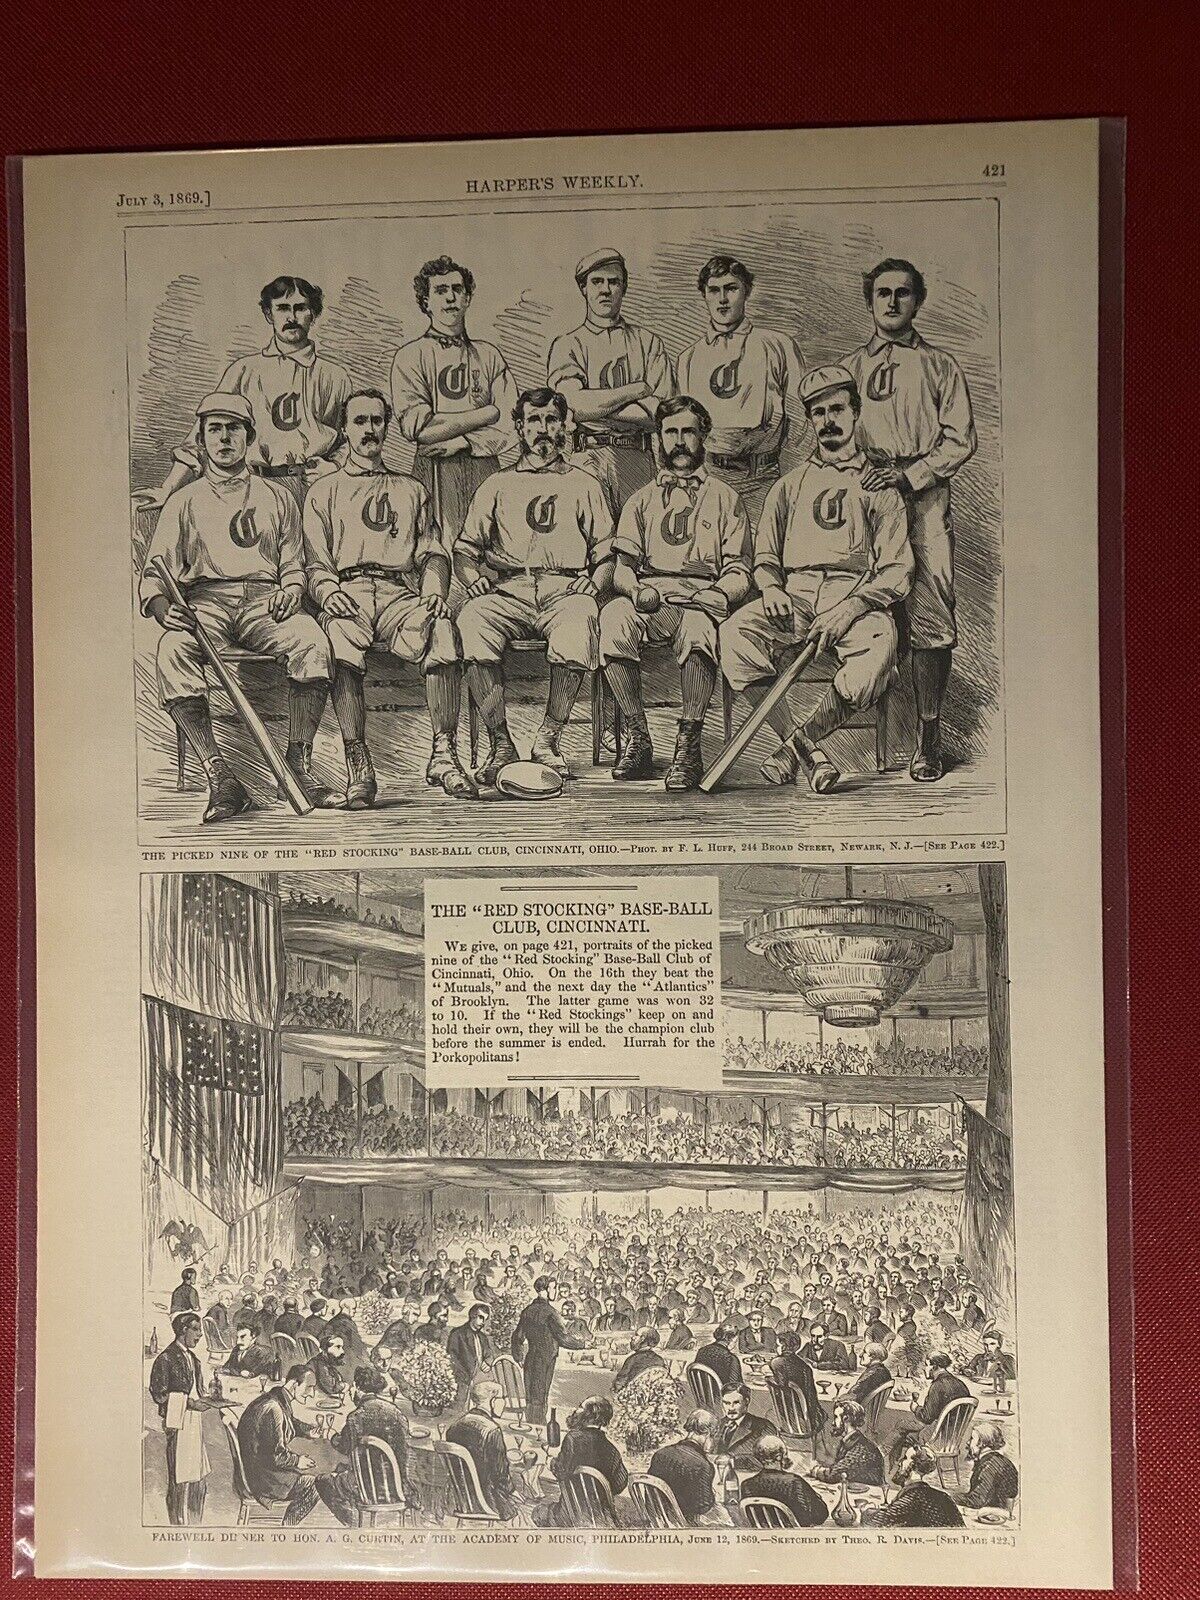 VINTAGE NEWSPAPER HEADLINE CINCINNATI RED STOCKINGS TEAM PHOTO 1869 BASEBALL